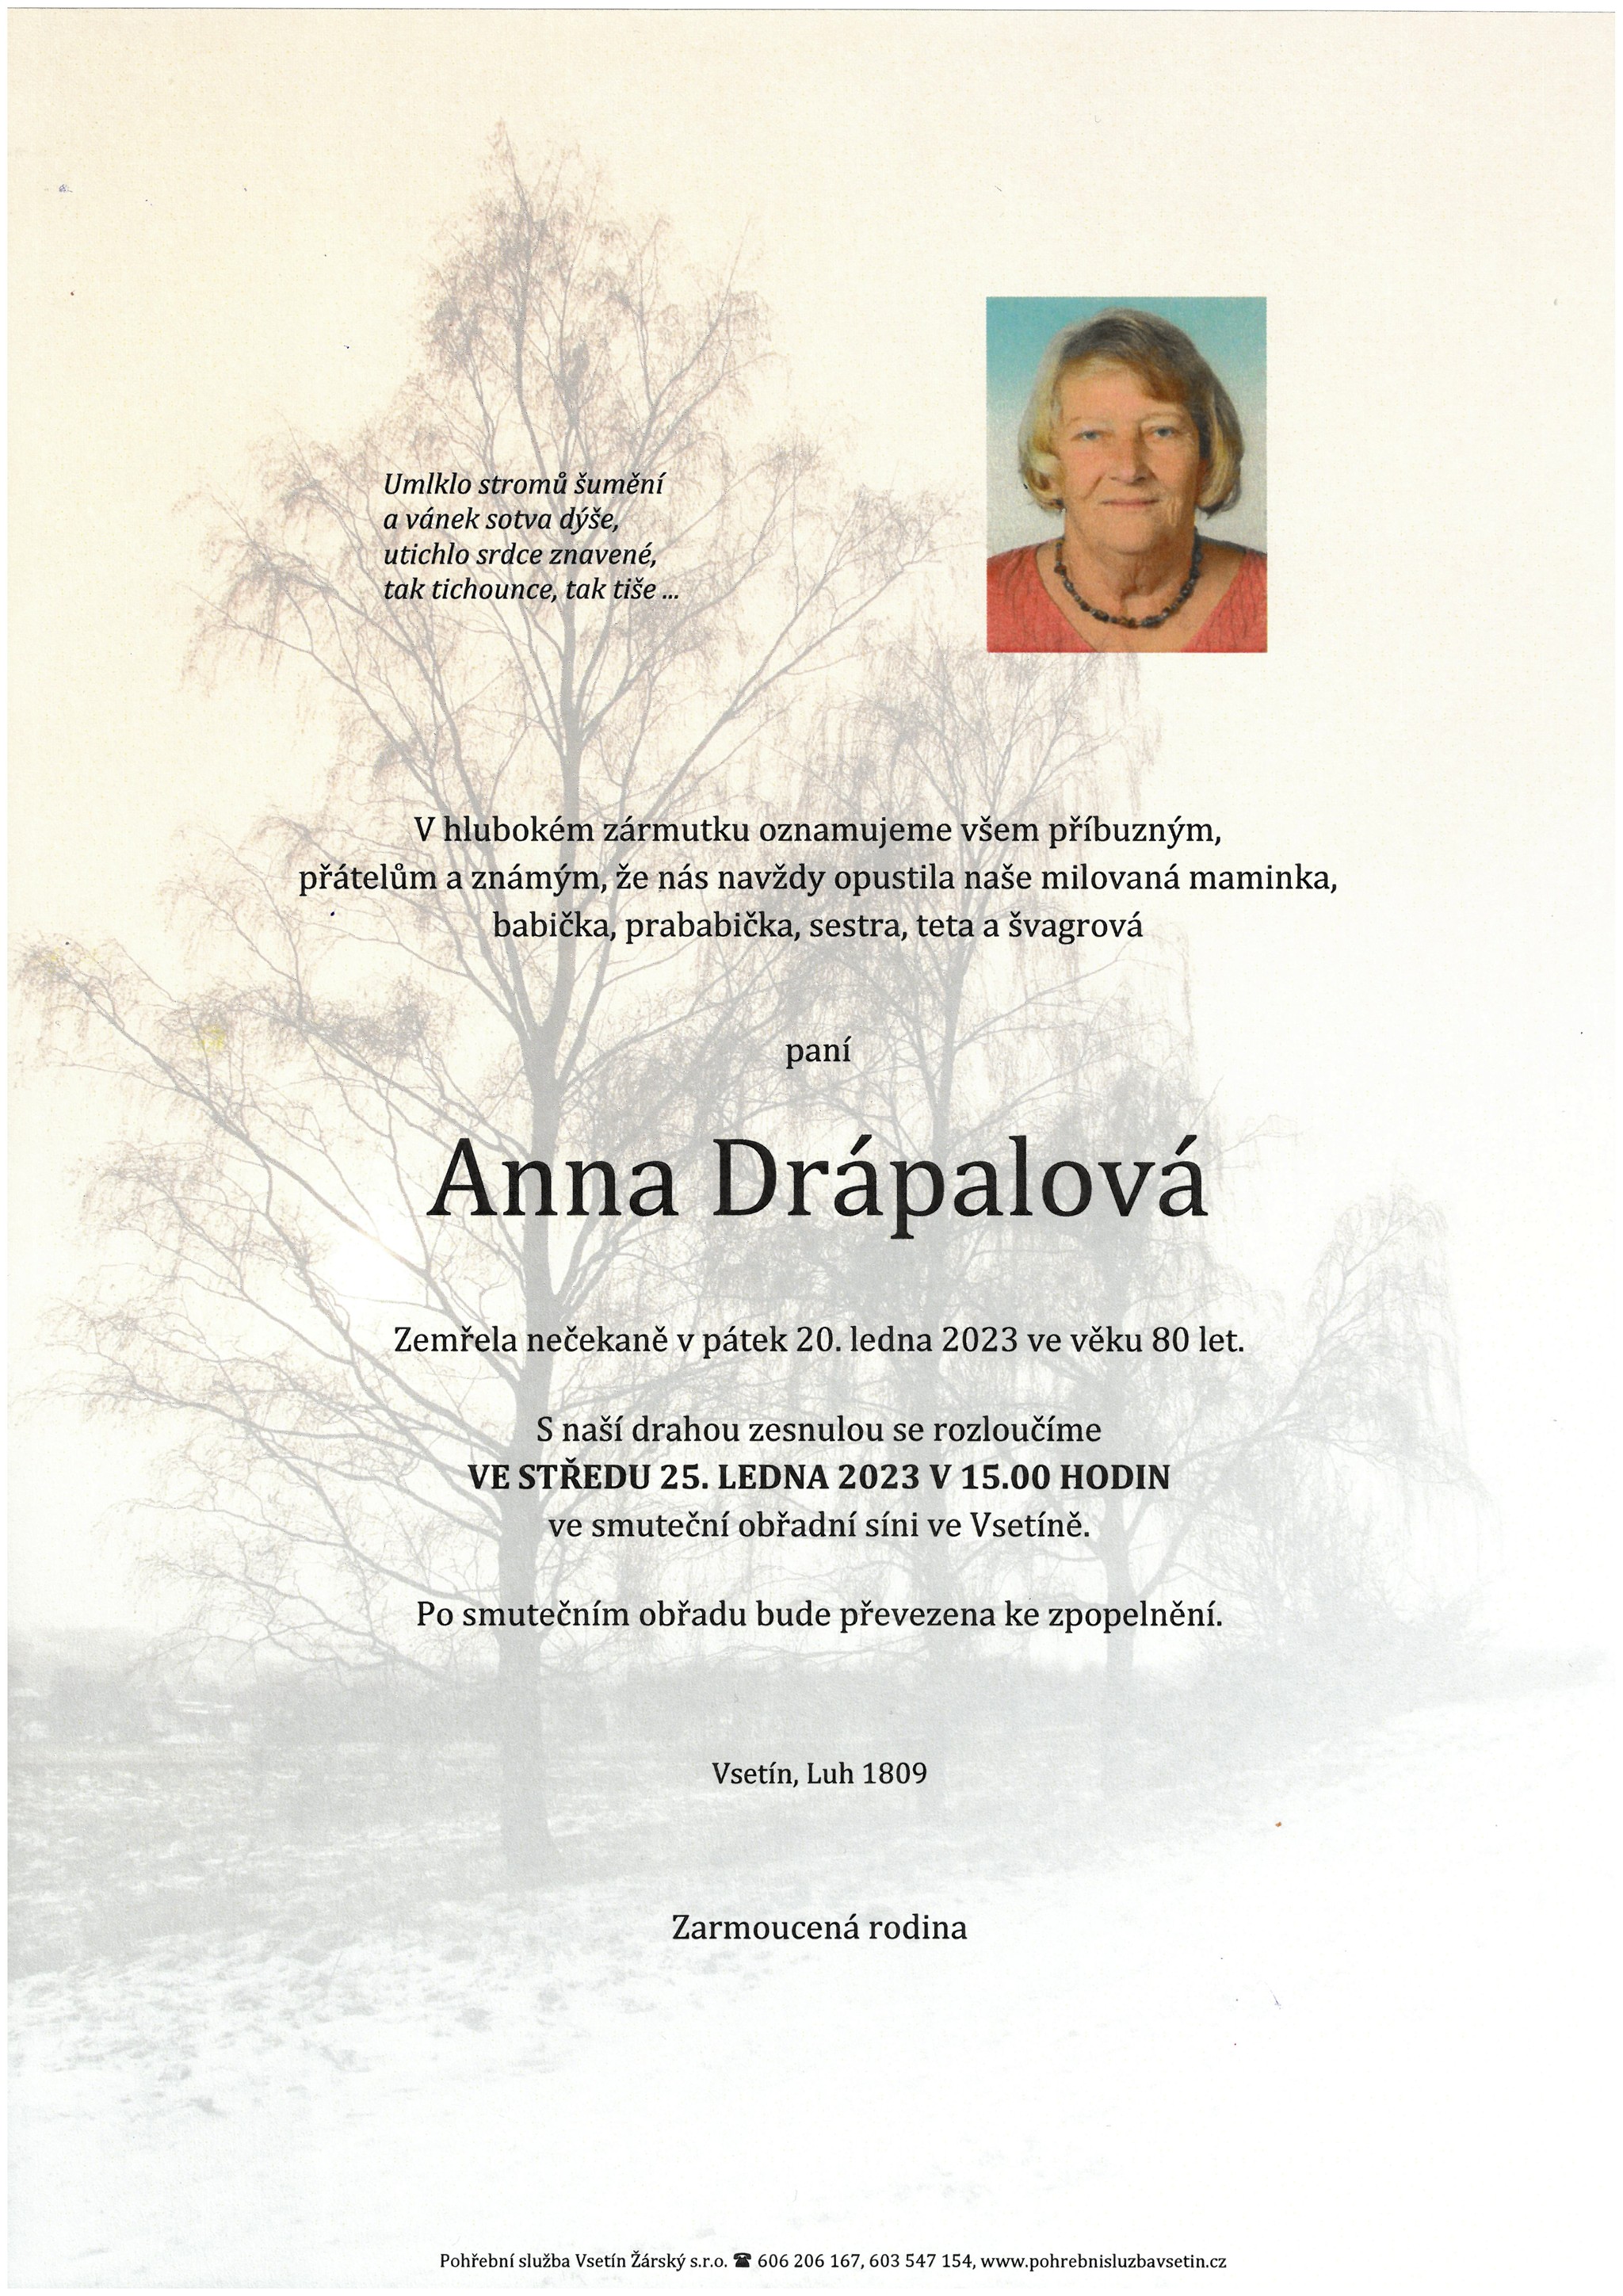 Anna Drápalová